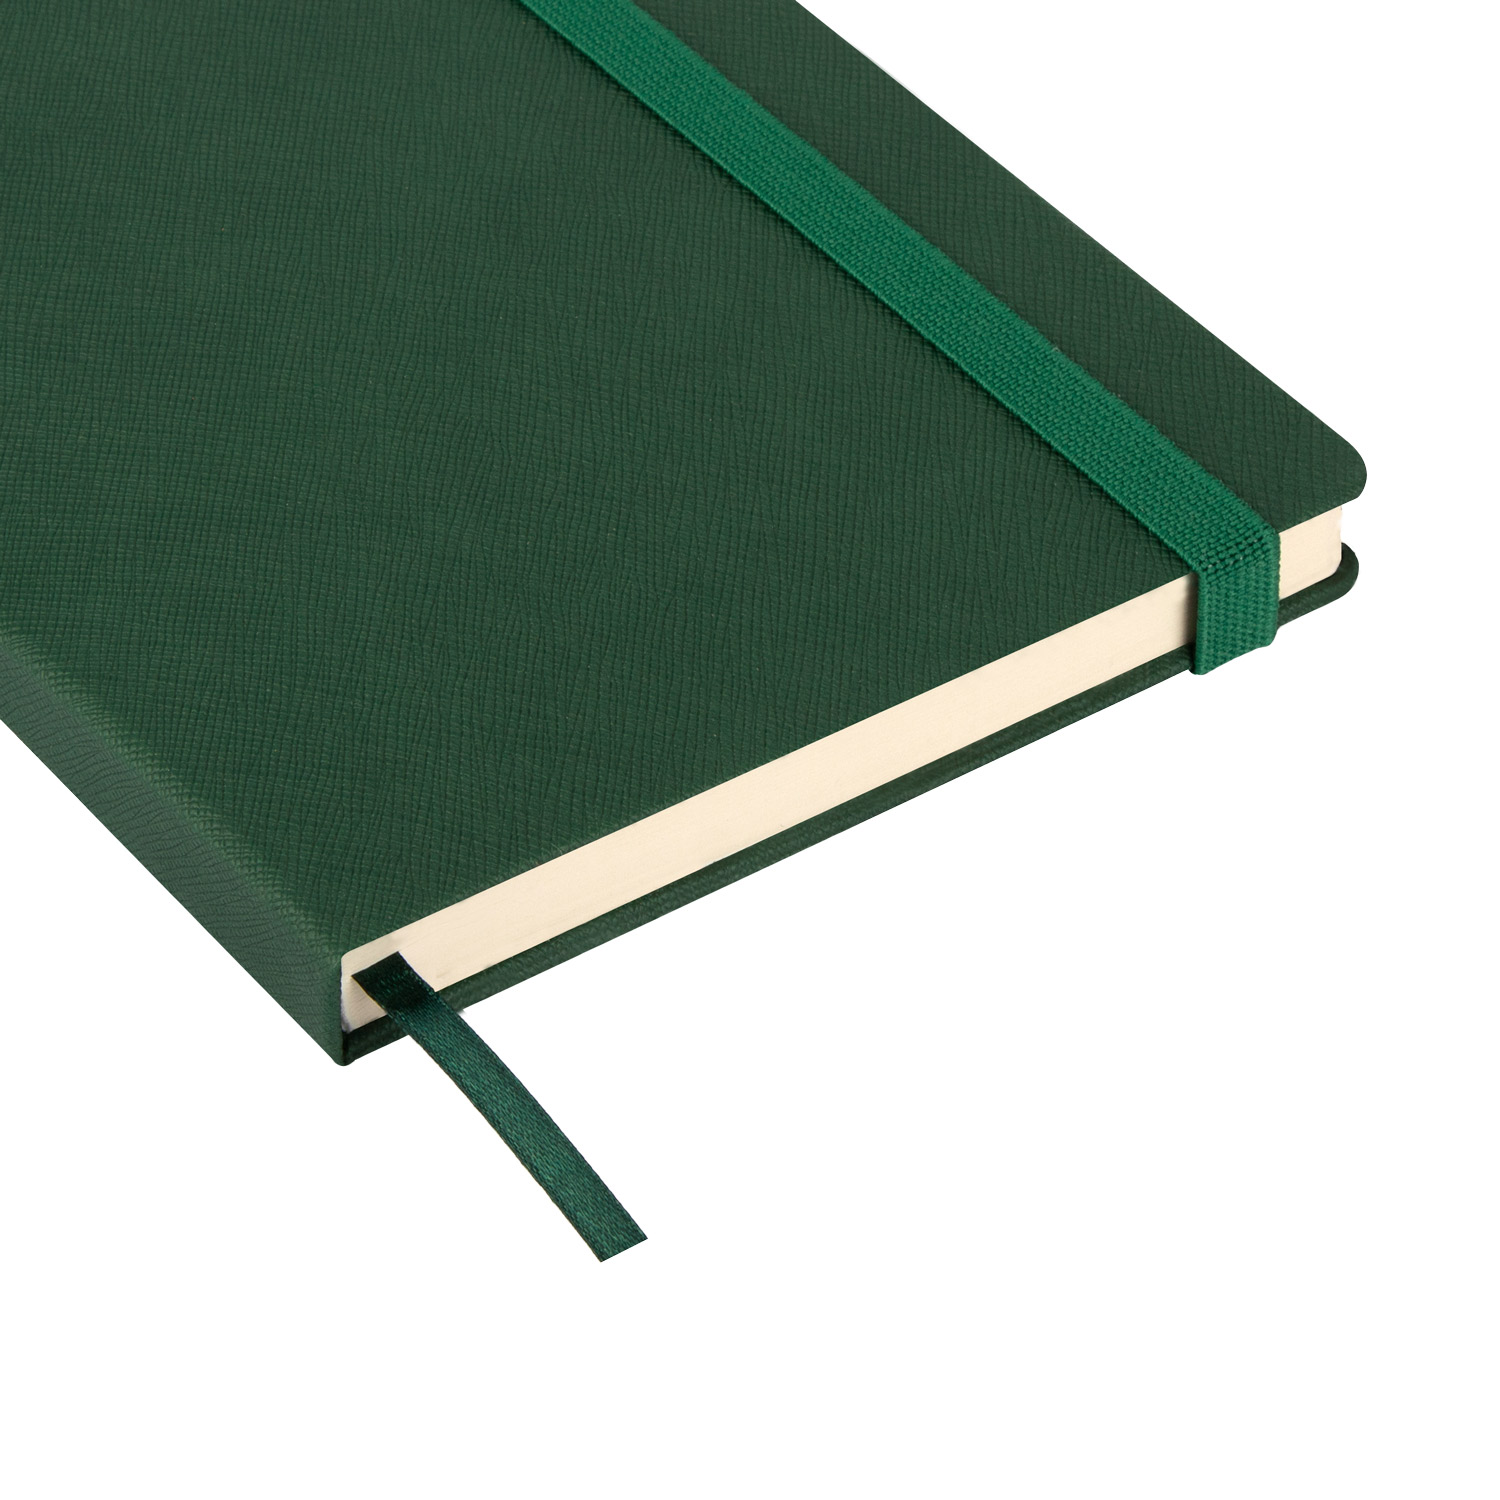 Ежедневник недатированный Summer time BtoBook, зеленый (без упаковки, без стикера)